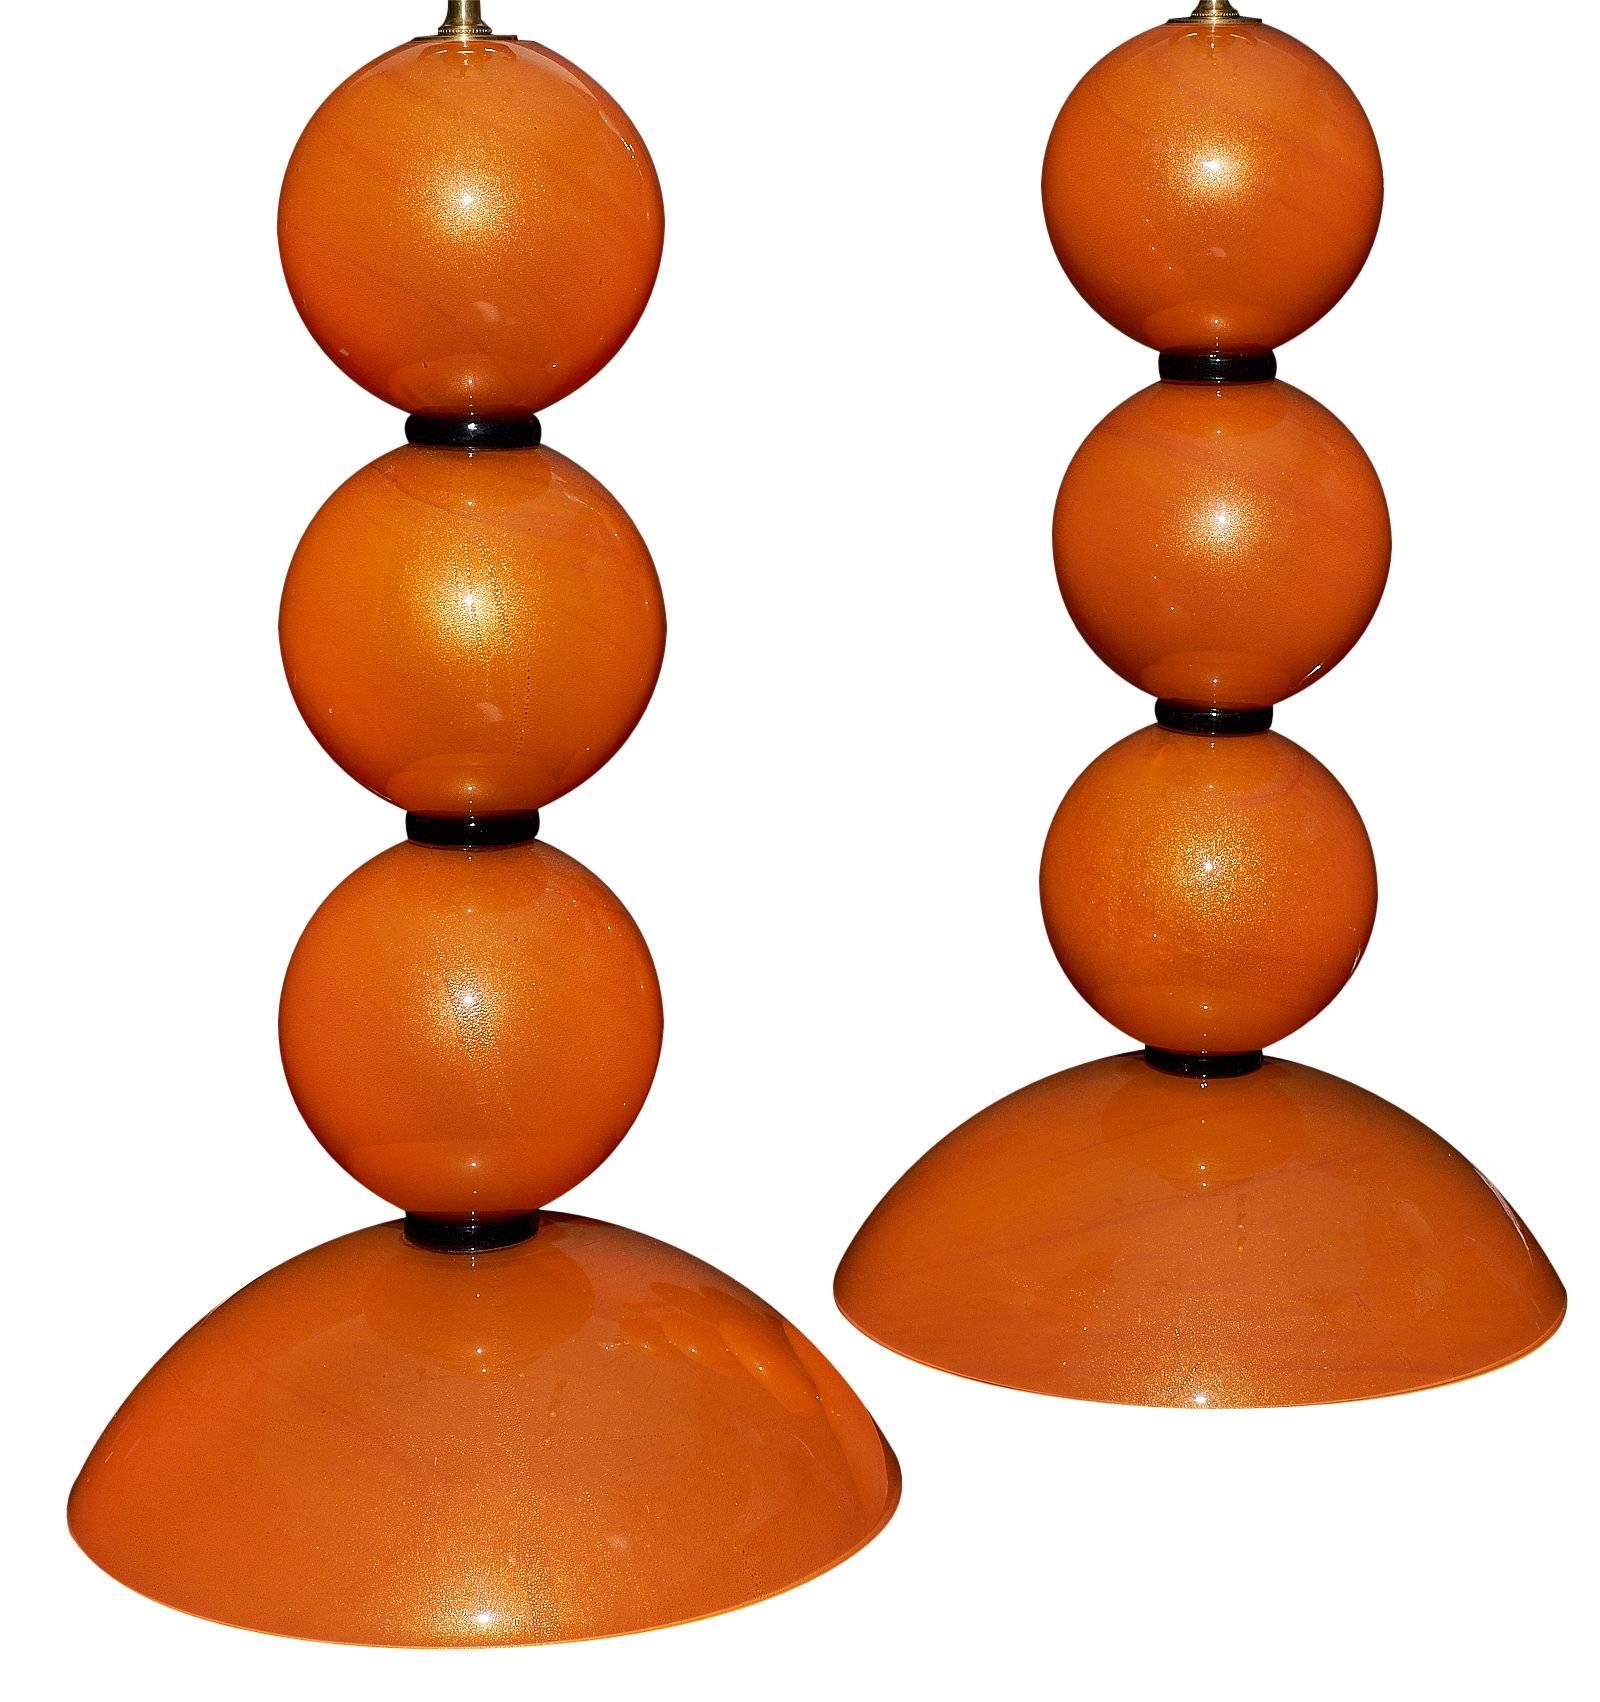 Wunderschöne orangefarbene Lampen aus mundgeblasenem Glas von A Dona in Murano. Dieses Paar hat eine exquisite, leuchtende Farbe und ist durchgehend goldfarben gesprenkelt. Sie wurden so verdrahtet, dass sie den US-Normen entsprechen.

Dieses Paar